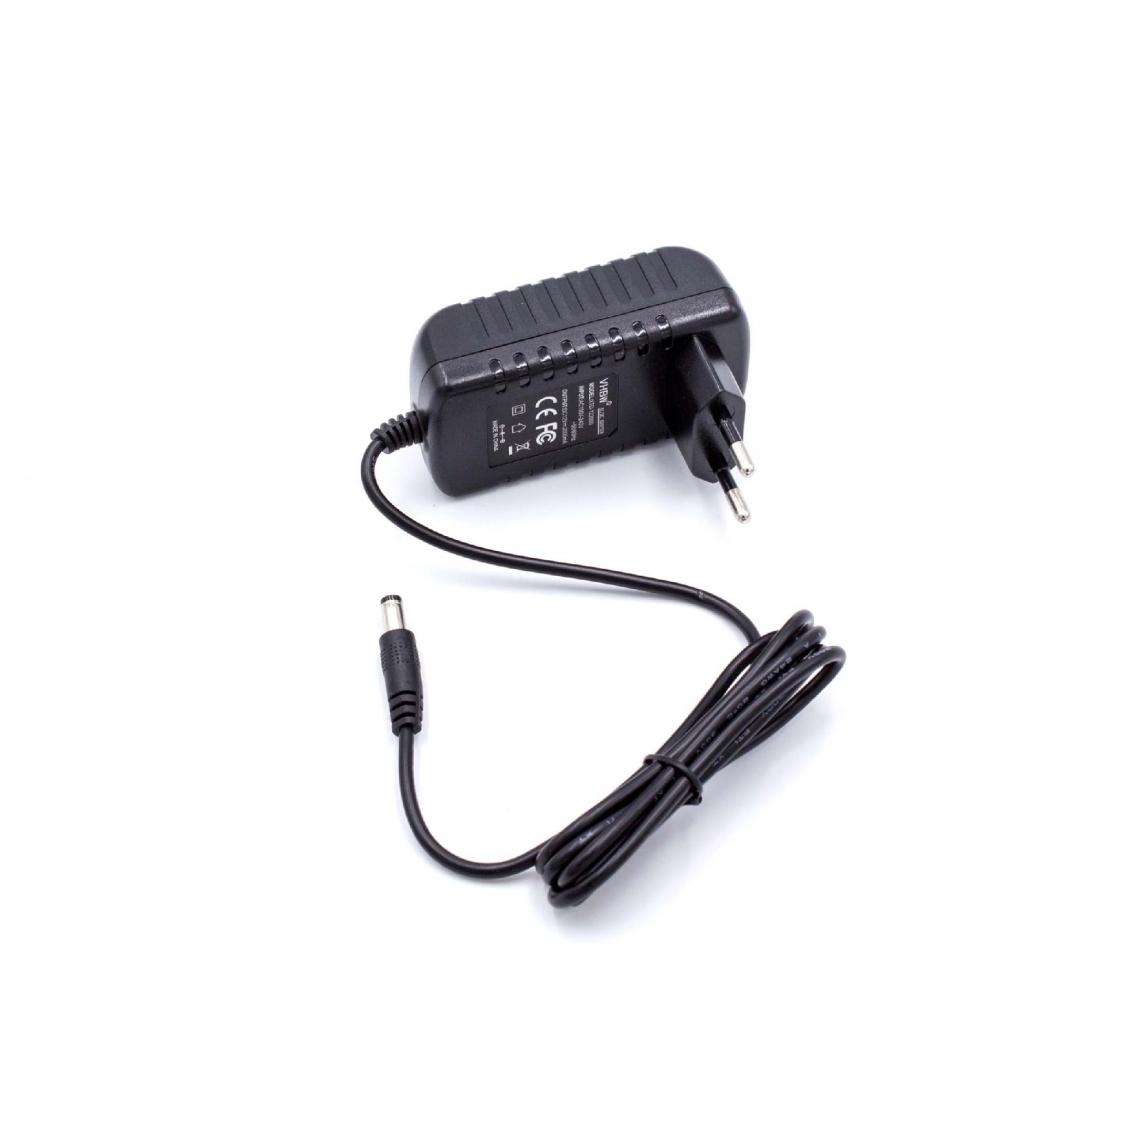 Vhbw - vhbw Adaptateur secteur compatible avec Philips Ledino phare à batterie 20W transfo, transformateur - Autre appareil de mesure